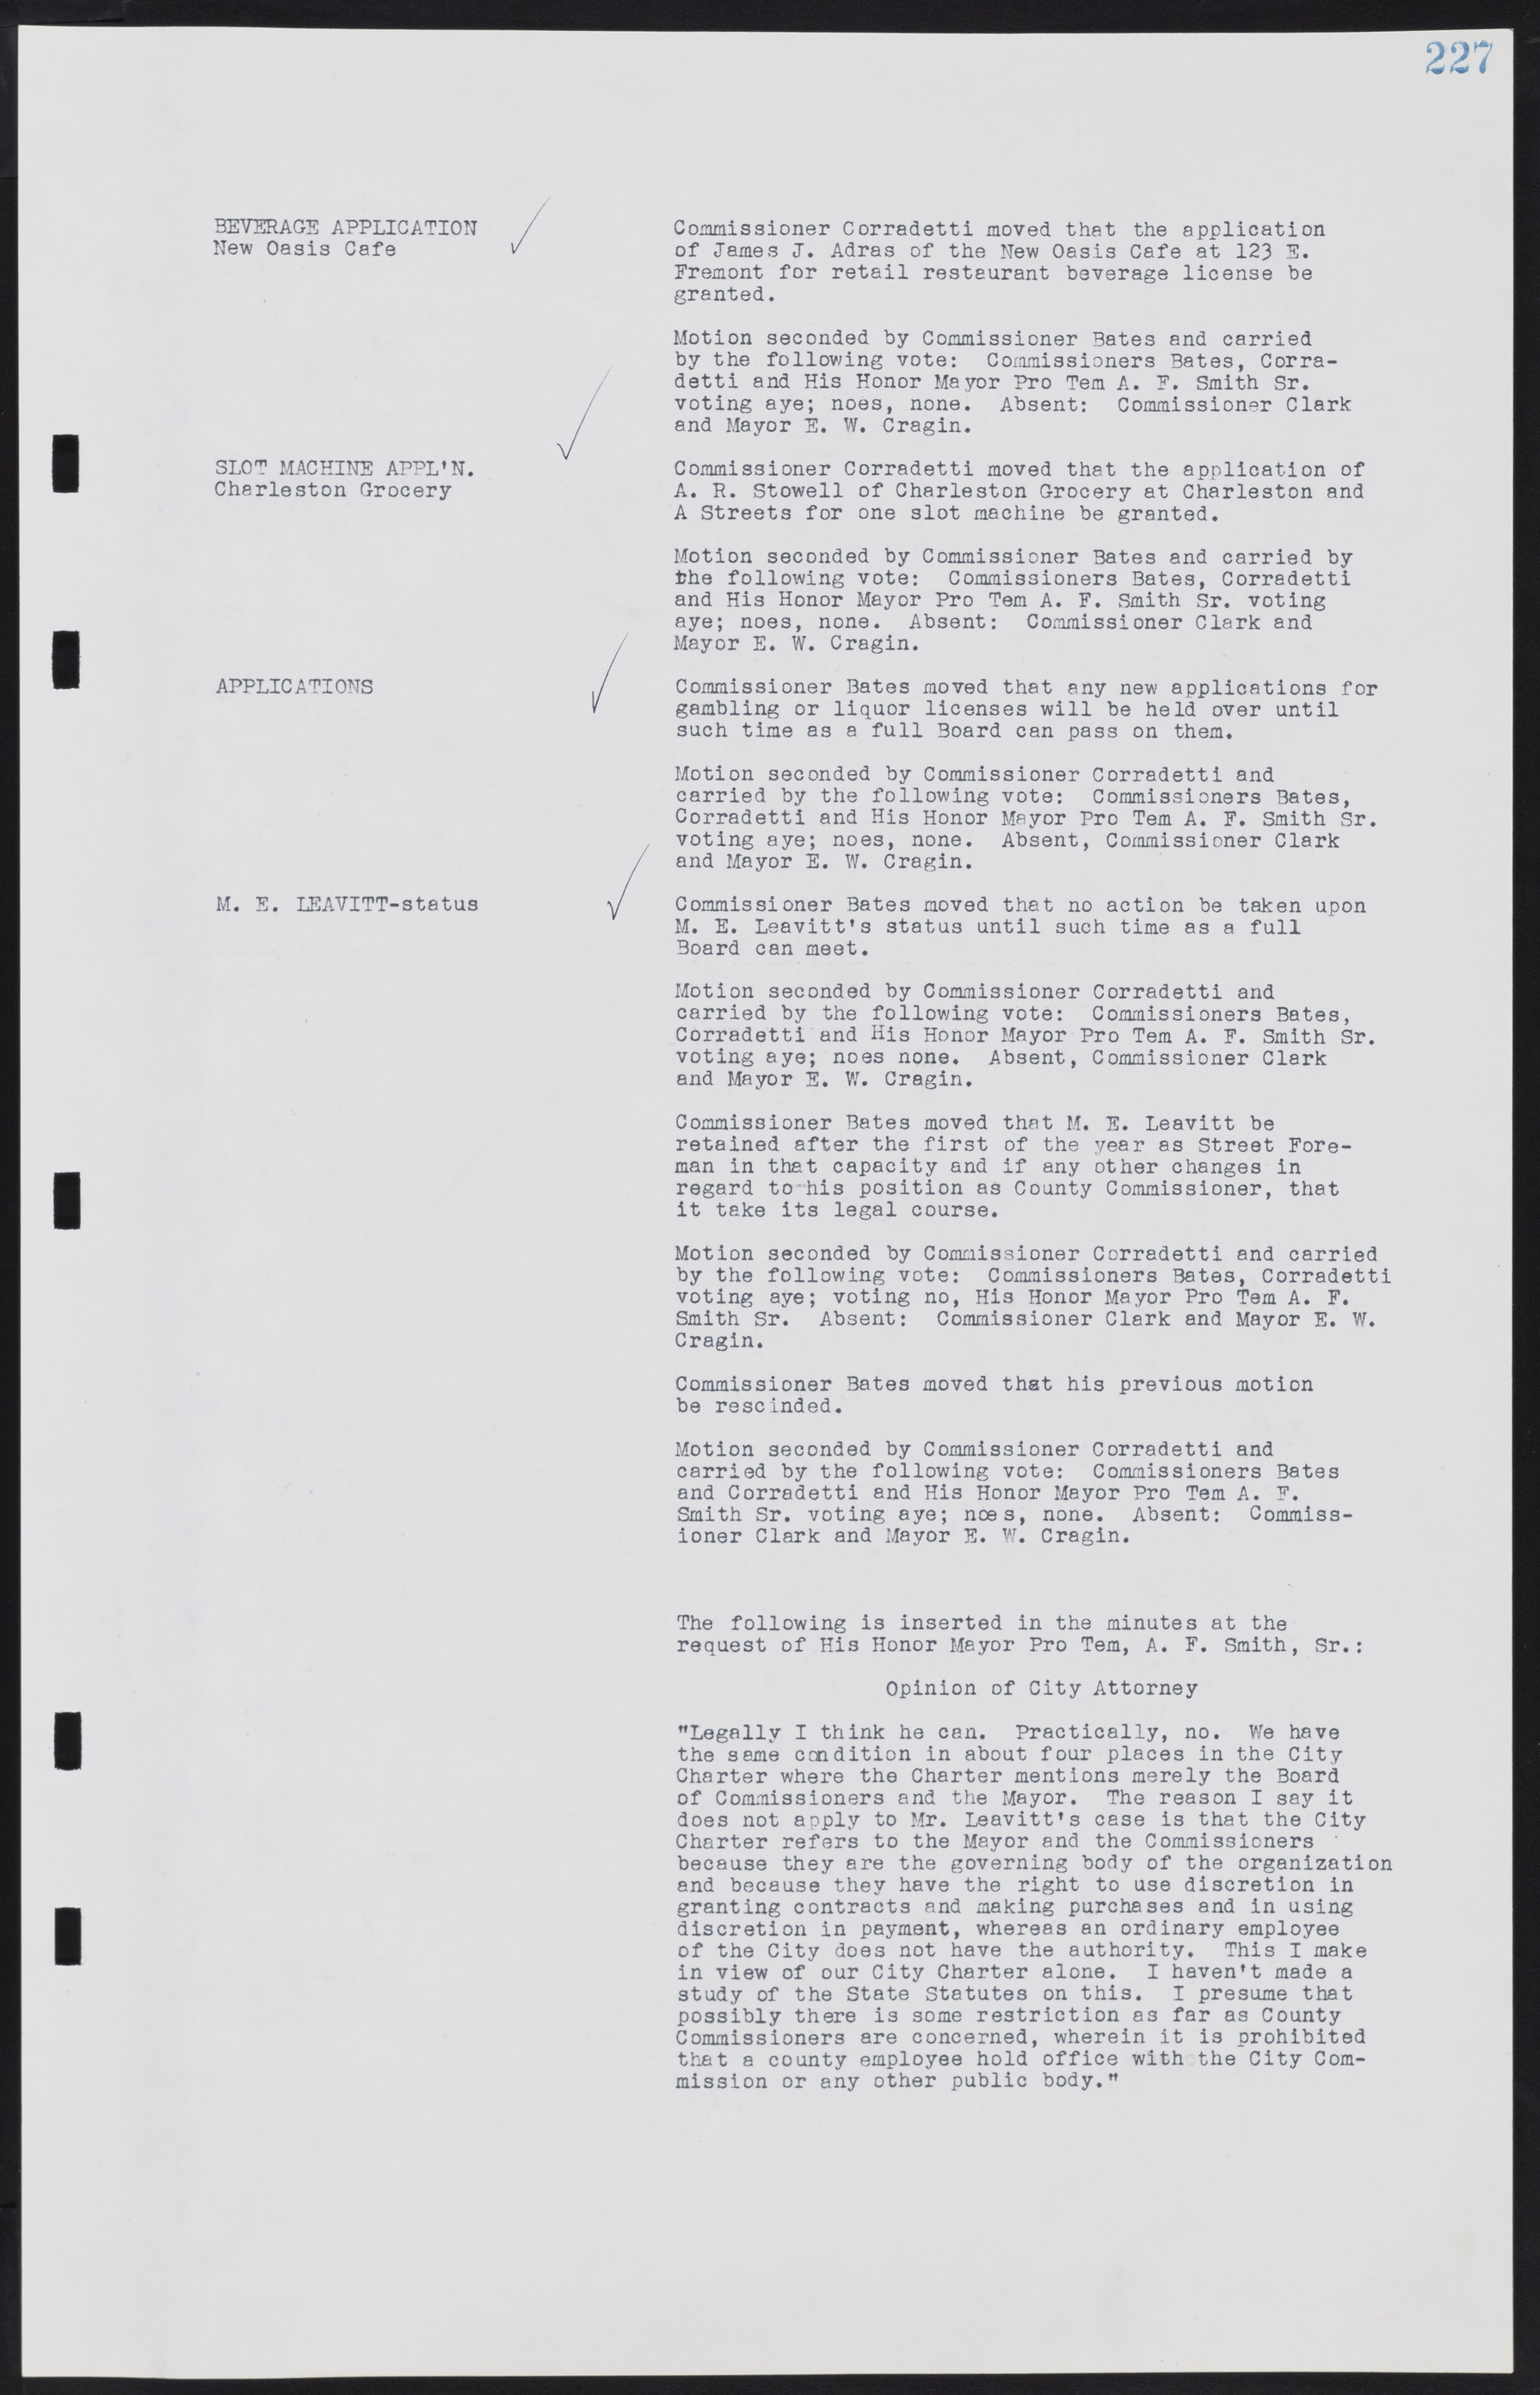 Las Vegas City Commission Minutes, August 11, 1942 to December 30, 1946, lvc000005-247